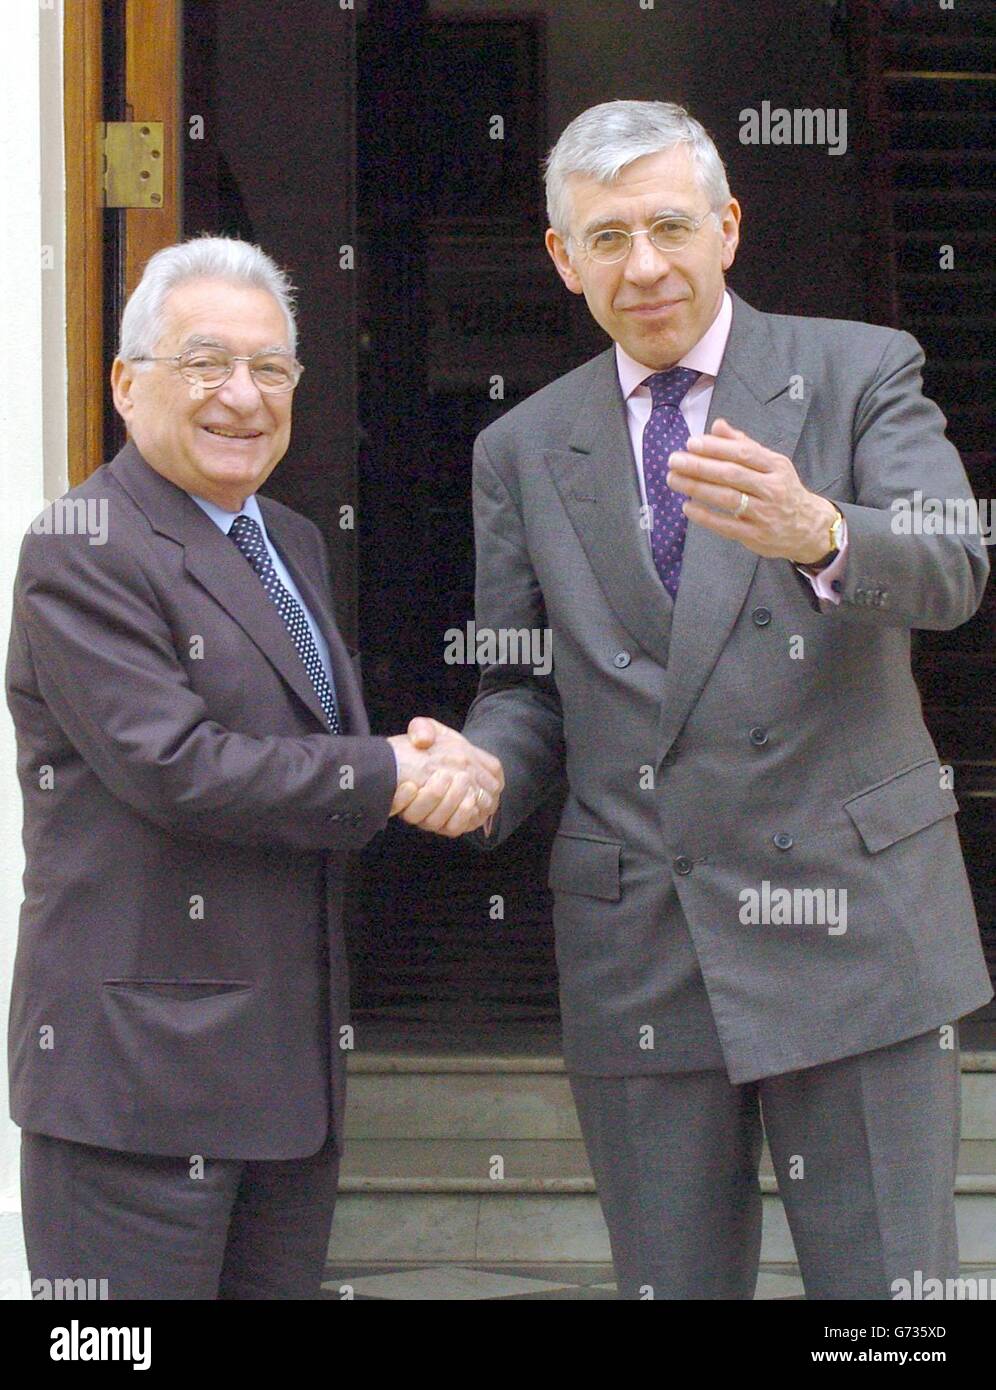 le ministre britannique des Affaires étrangères Jack Straw (à droite) salue son homologue grec, Petros Molyviatis, à sa résidence officielle de Londres, au 1 Carlton Gardens à Londres. Banque D'Images